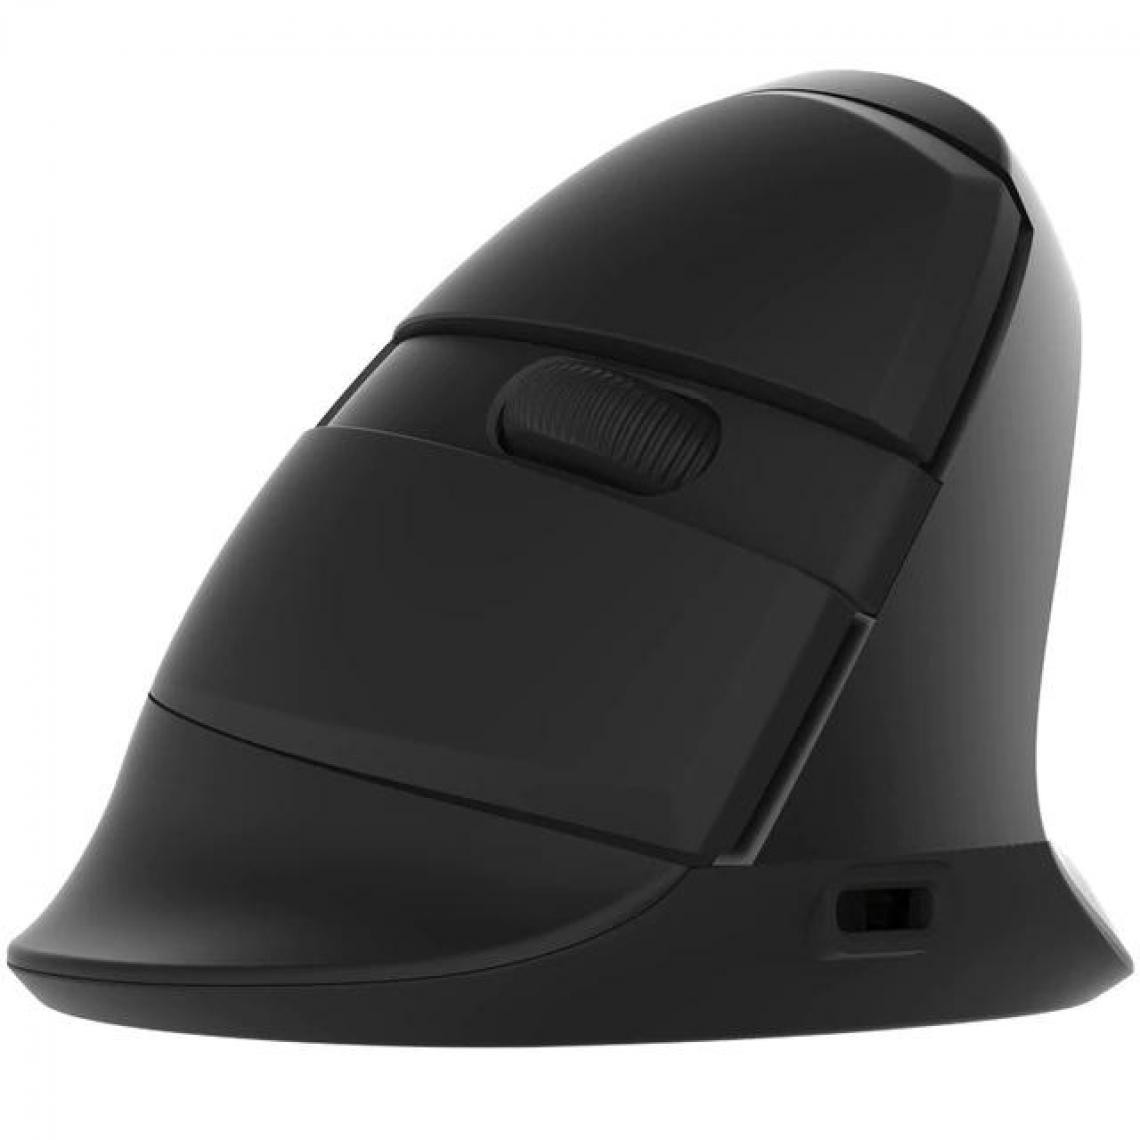 Universal - Souris gaming sans fil Bluetooth Vertical Ergonomic Rechargeable PC Gamer RGB Laptop Rétroéclairée Souris | Mouse (Noir) - Souris